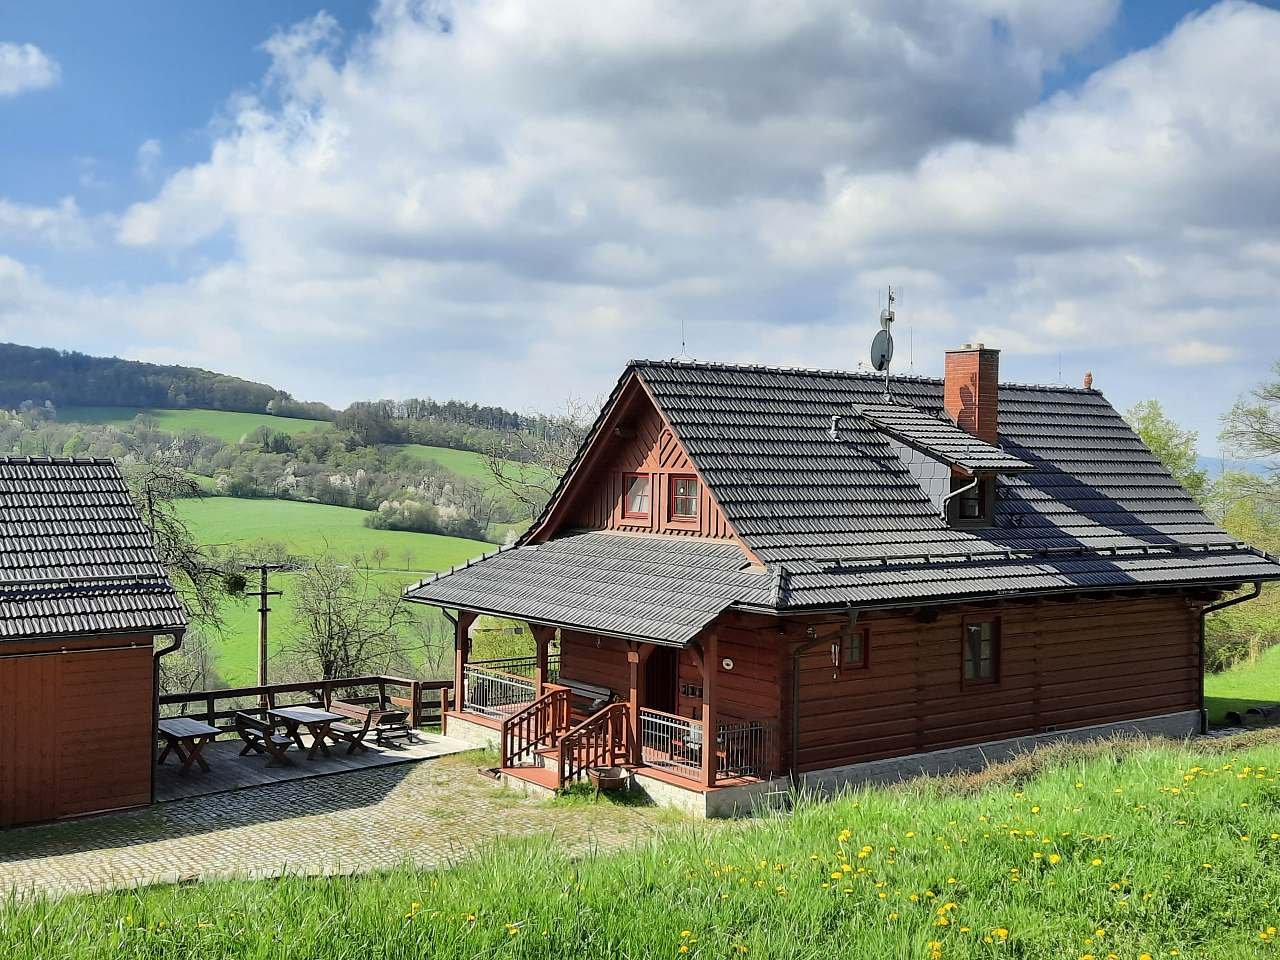 Cabana de madeira Valašská em Háji, - terraço com a chamada cozinha de verão - área coberta do lado de fora